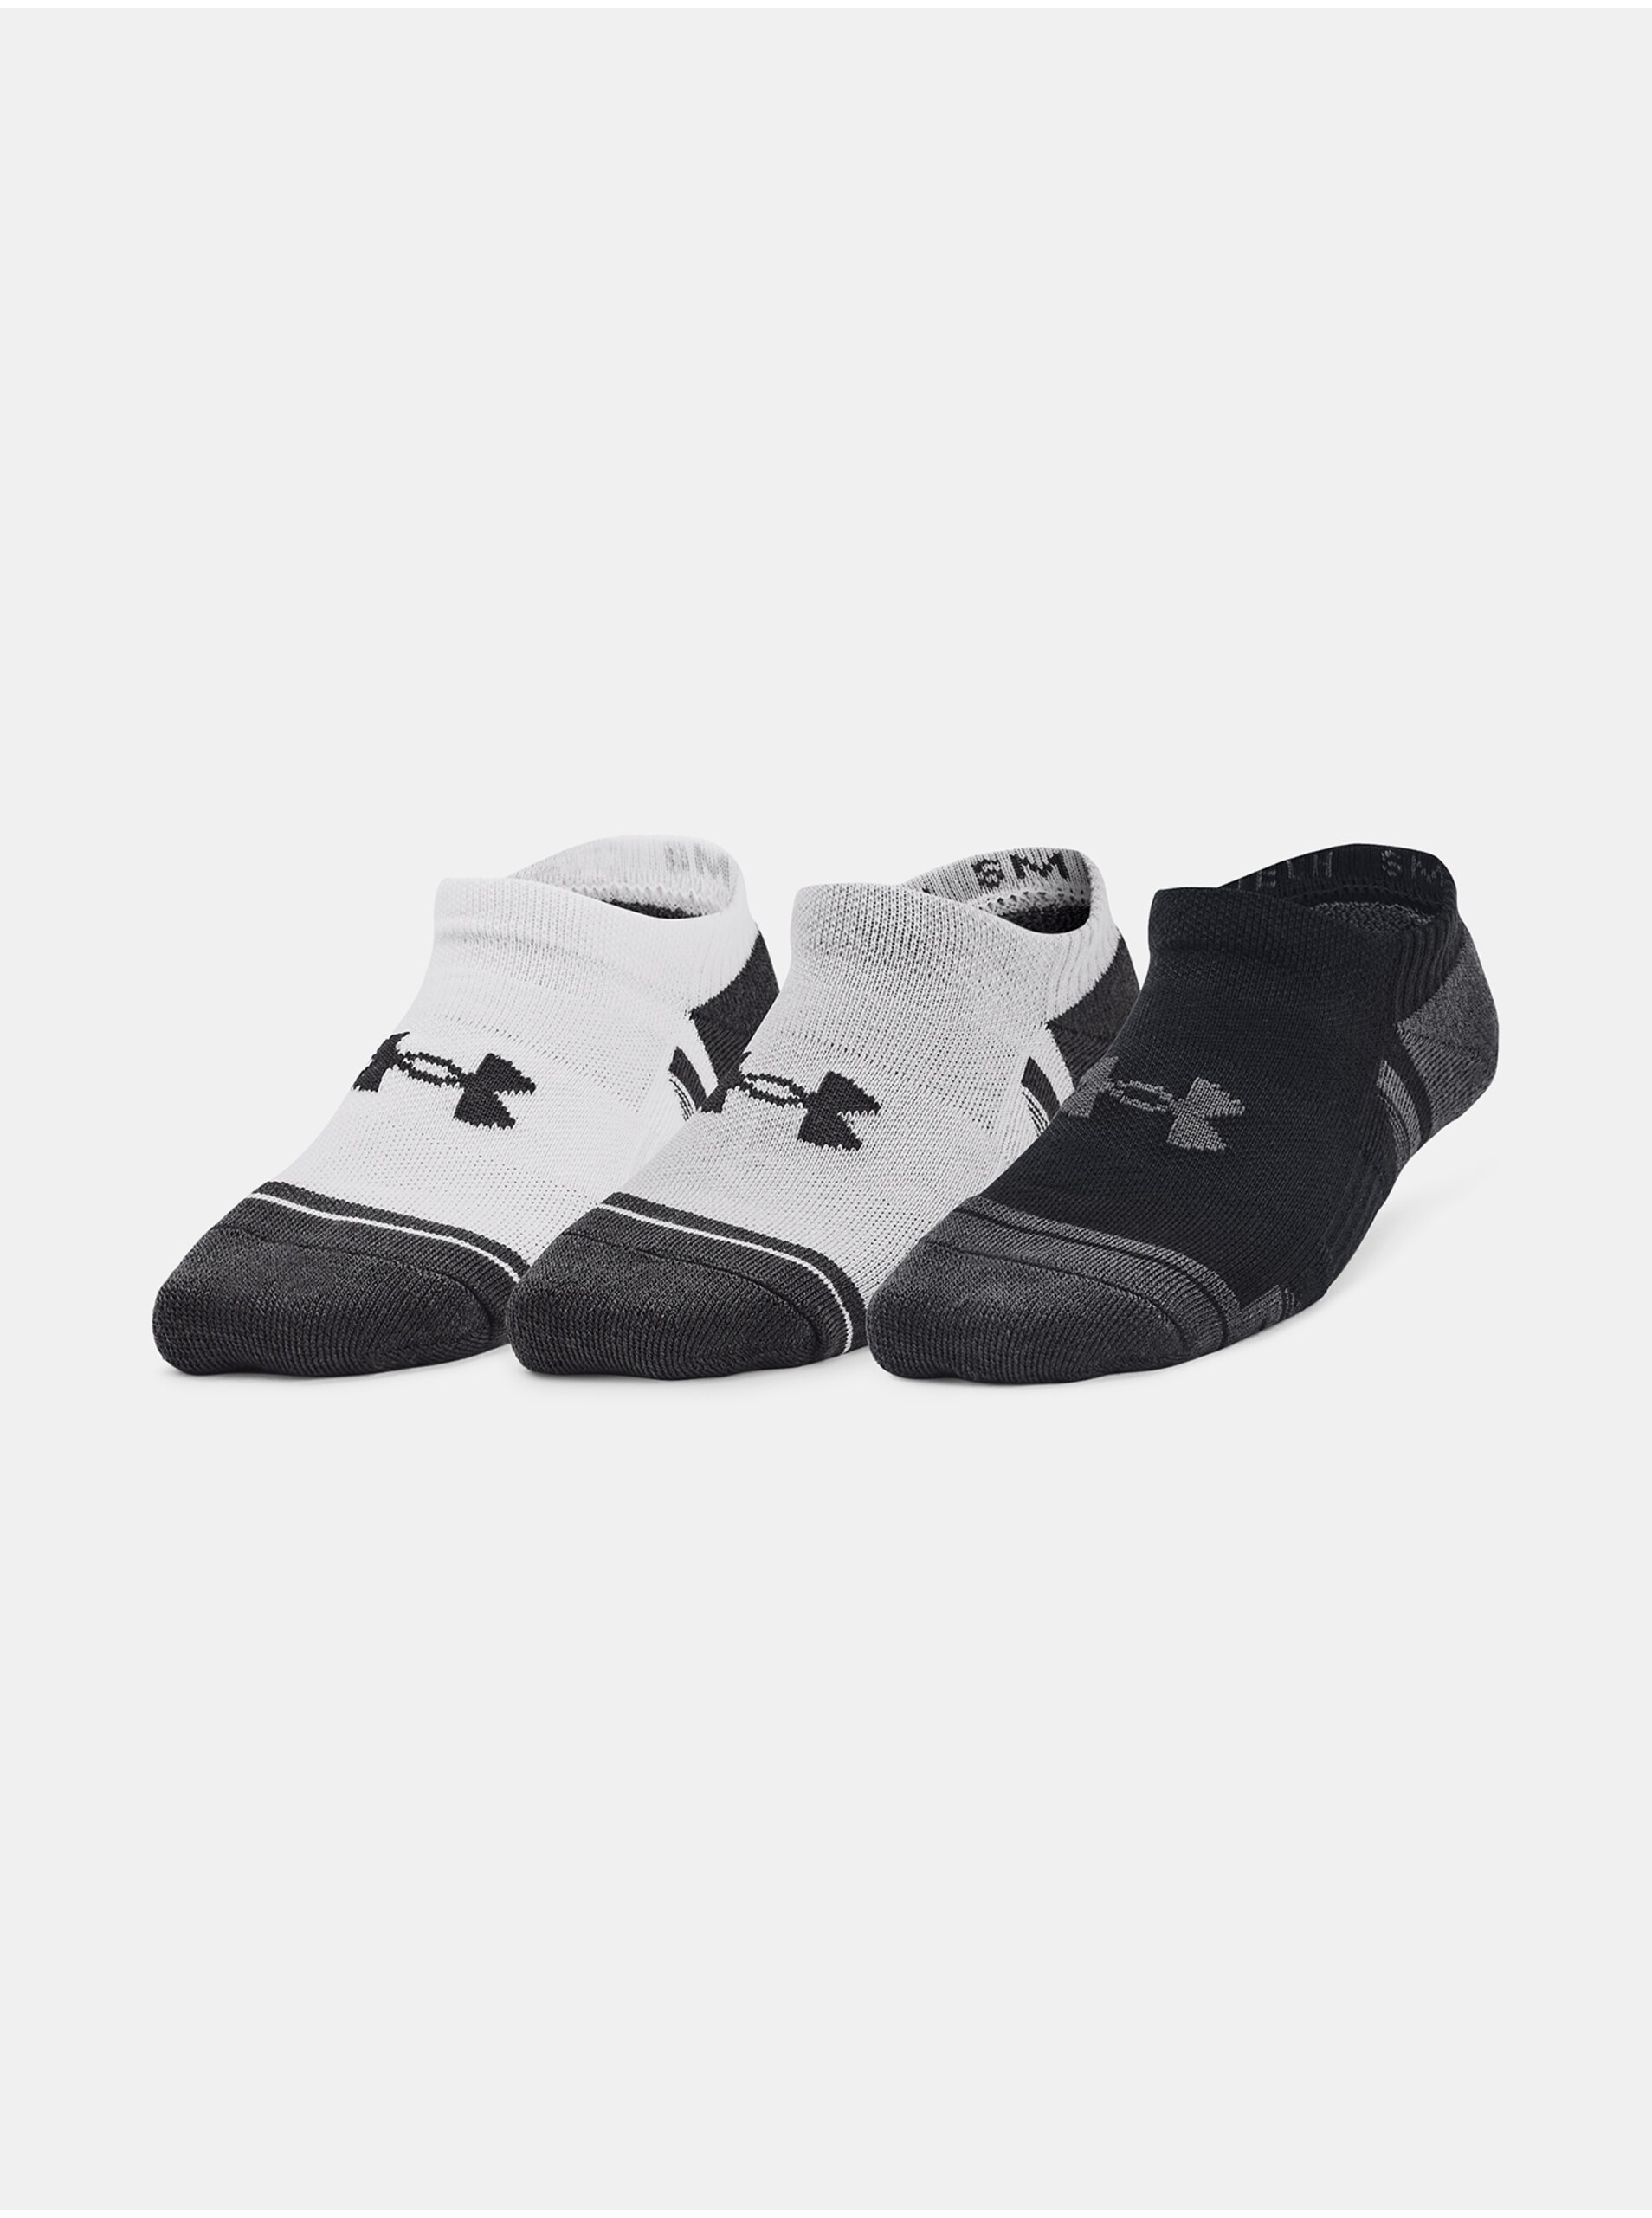 Lacno Súprava troch párov detských ponožiek v bielej, šedej a čiernej farbe Under Armour Performance